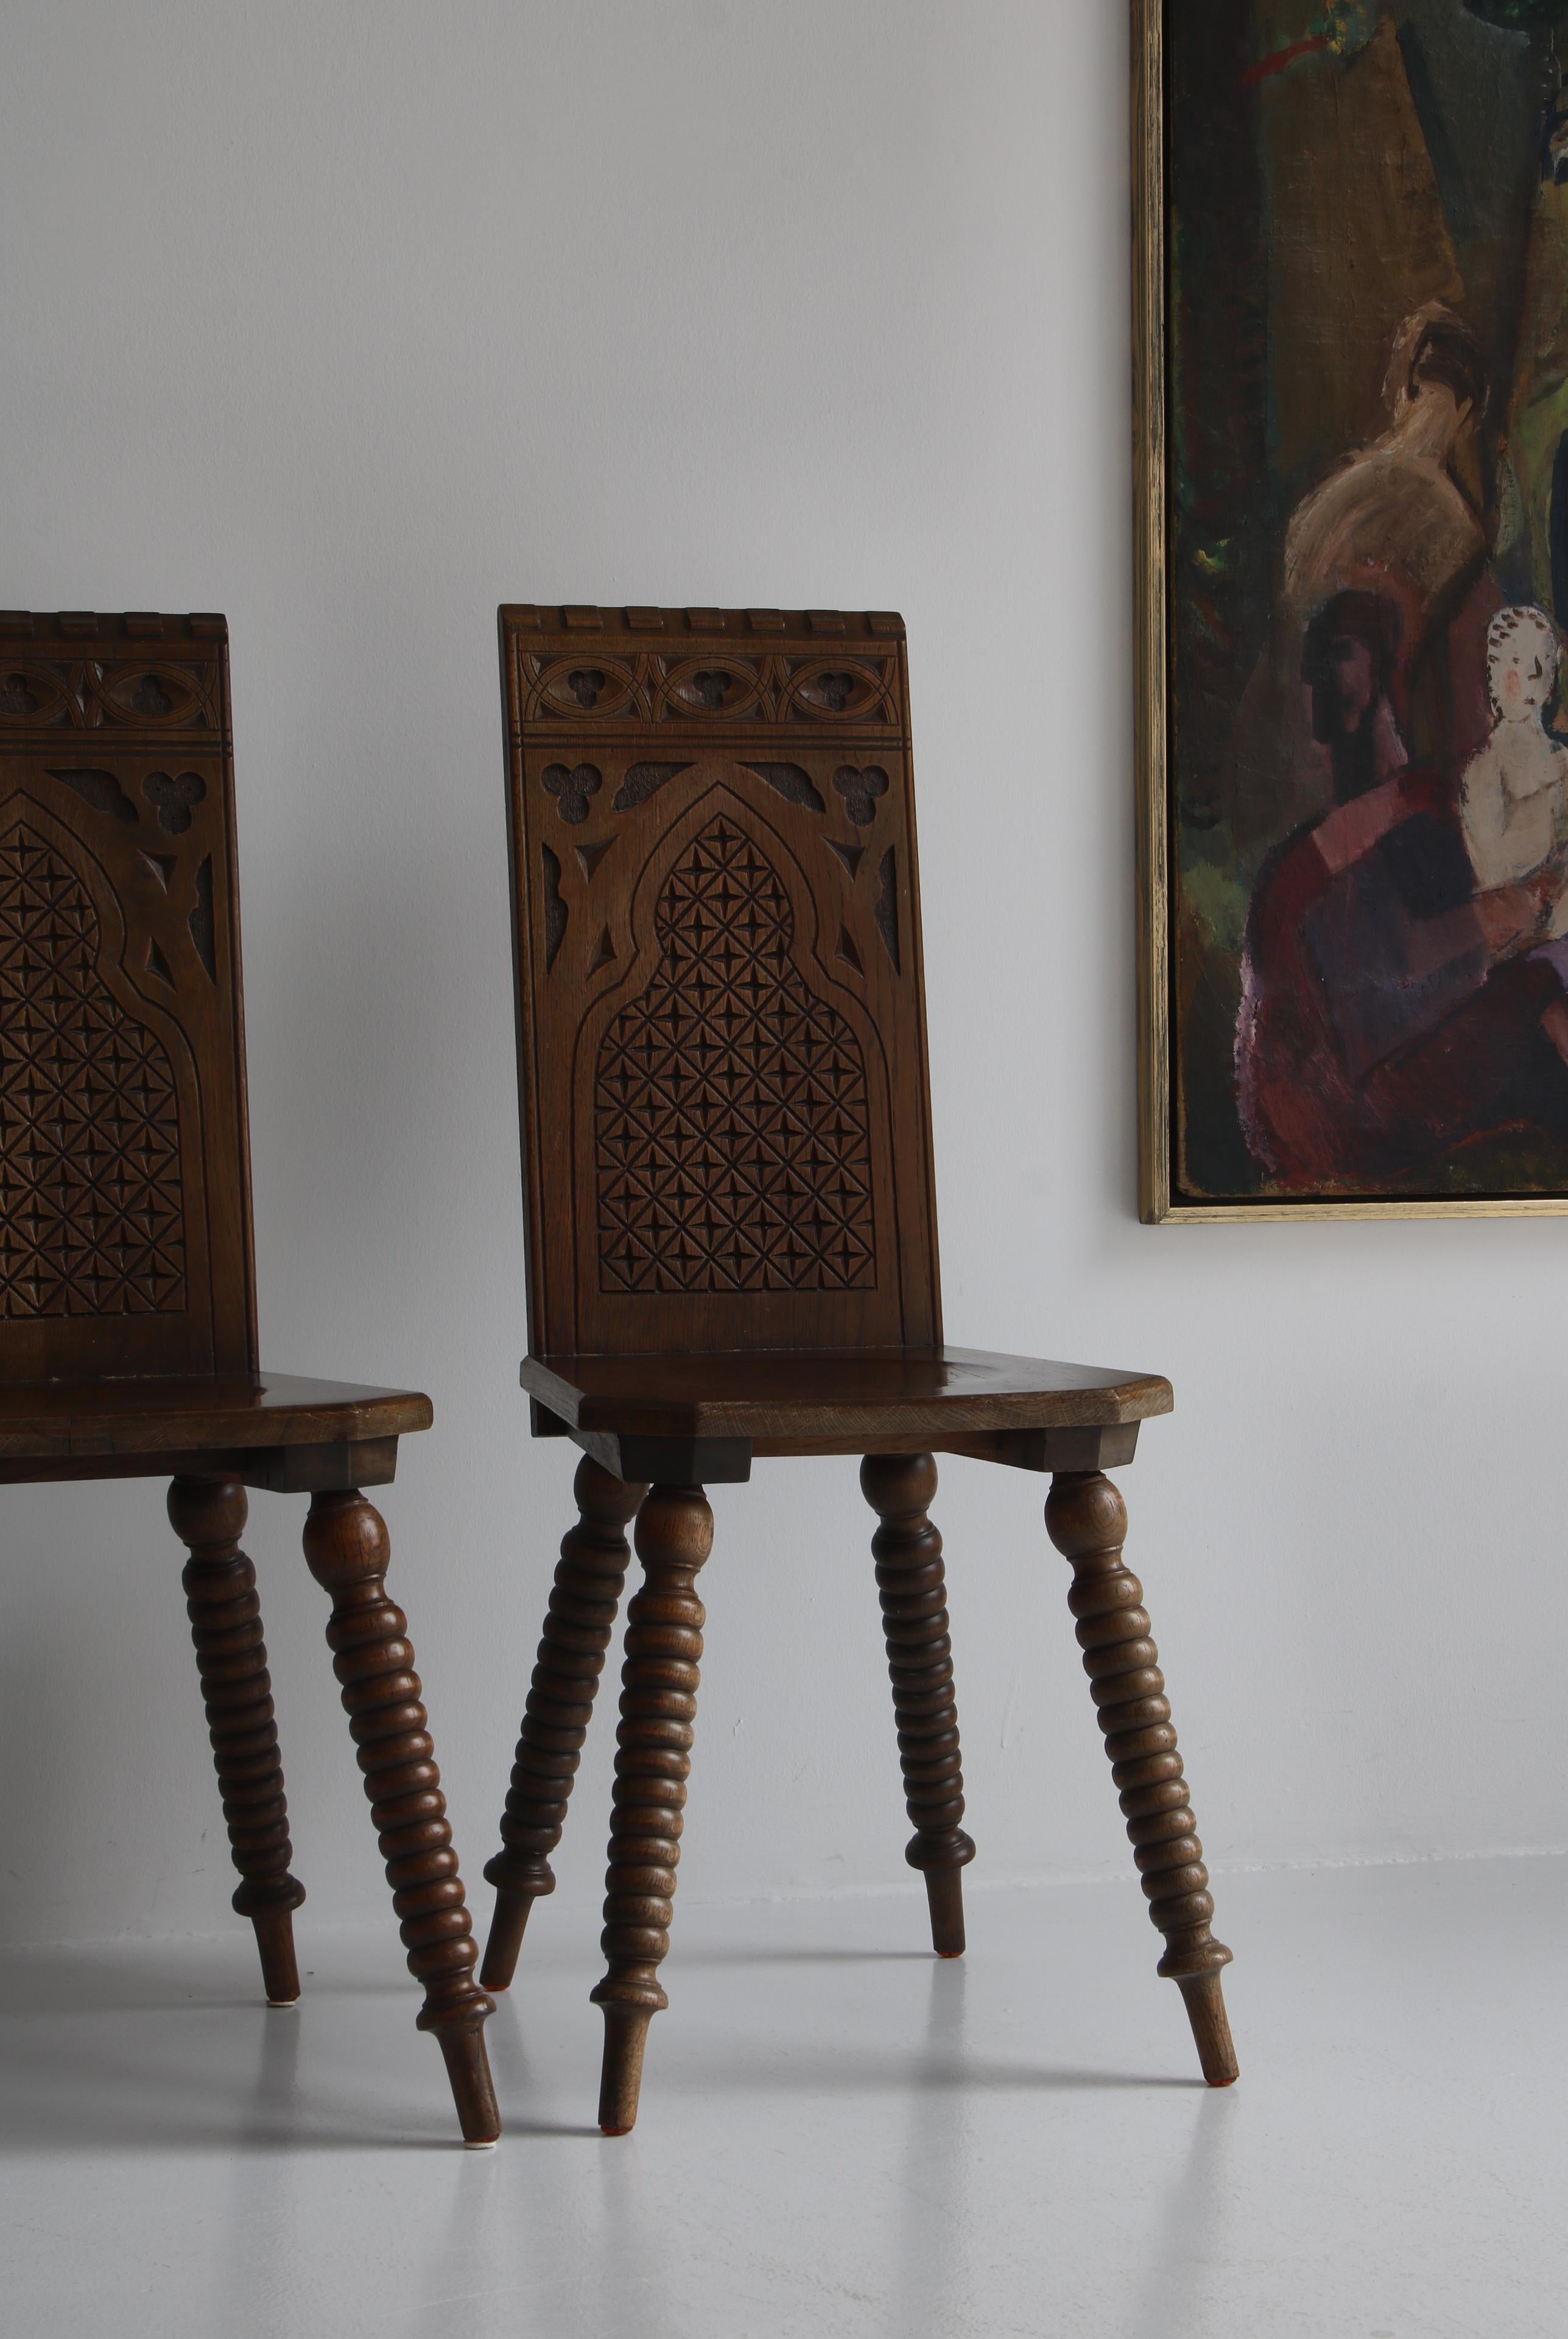 Erstaunliches Paar Beistellstühle im modernen Barockstil von einem skandinavischen Tischler aus dem frühen 20. Jahrhundert. Die dunkel gebeizte Eiche ist meisterhaft geschnitzt und mit abstrakten Motiven verziert. Die Stühle haben einen